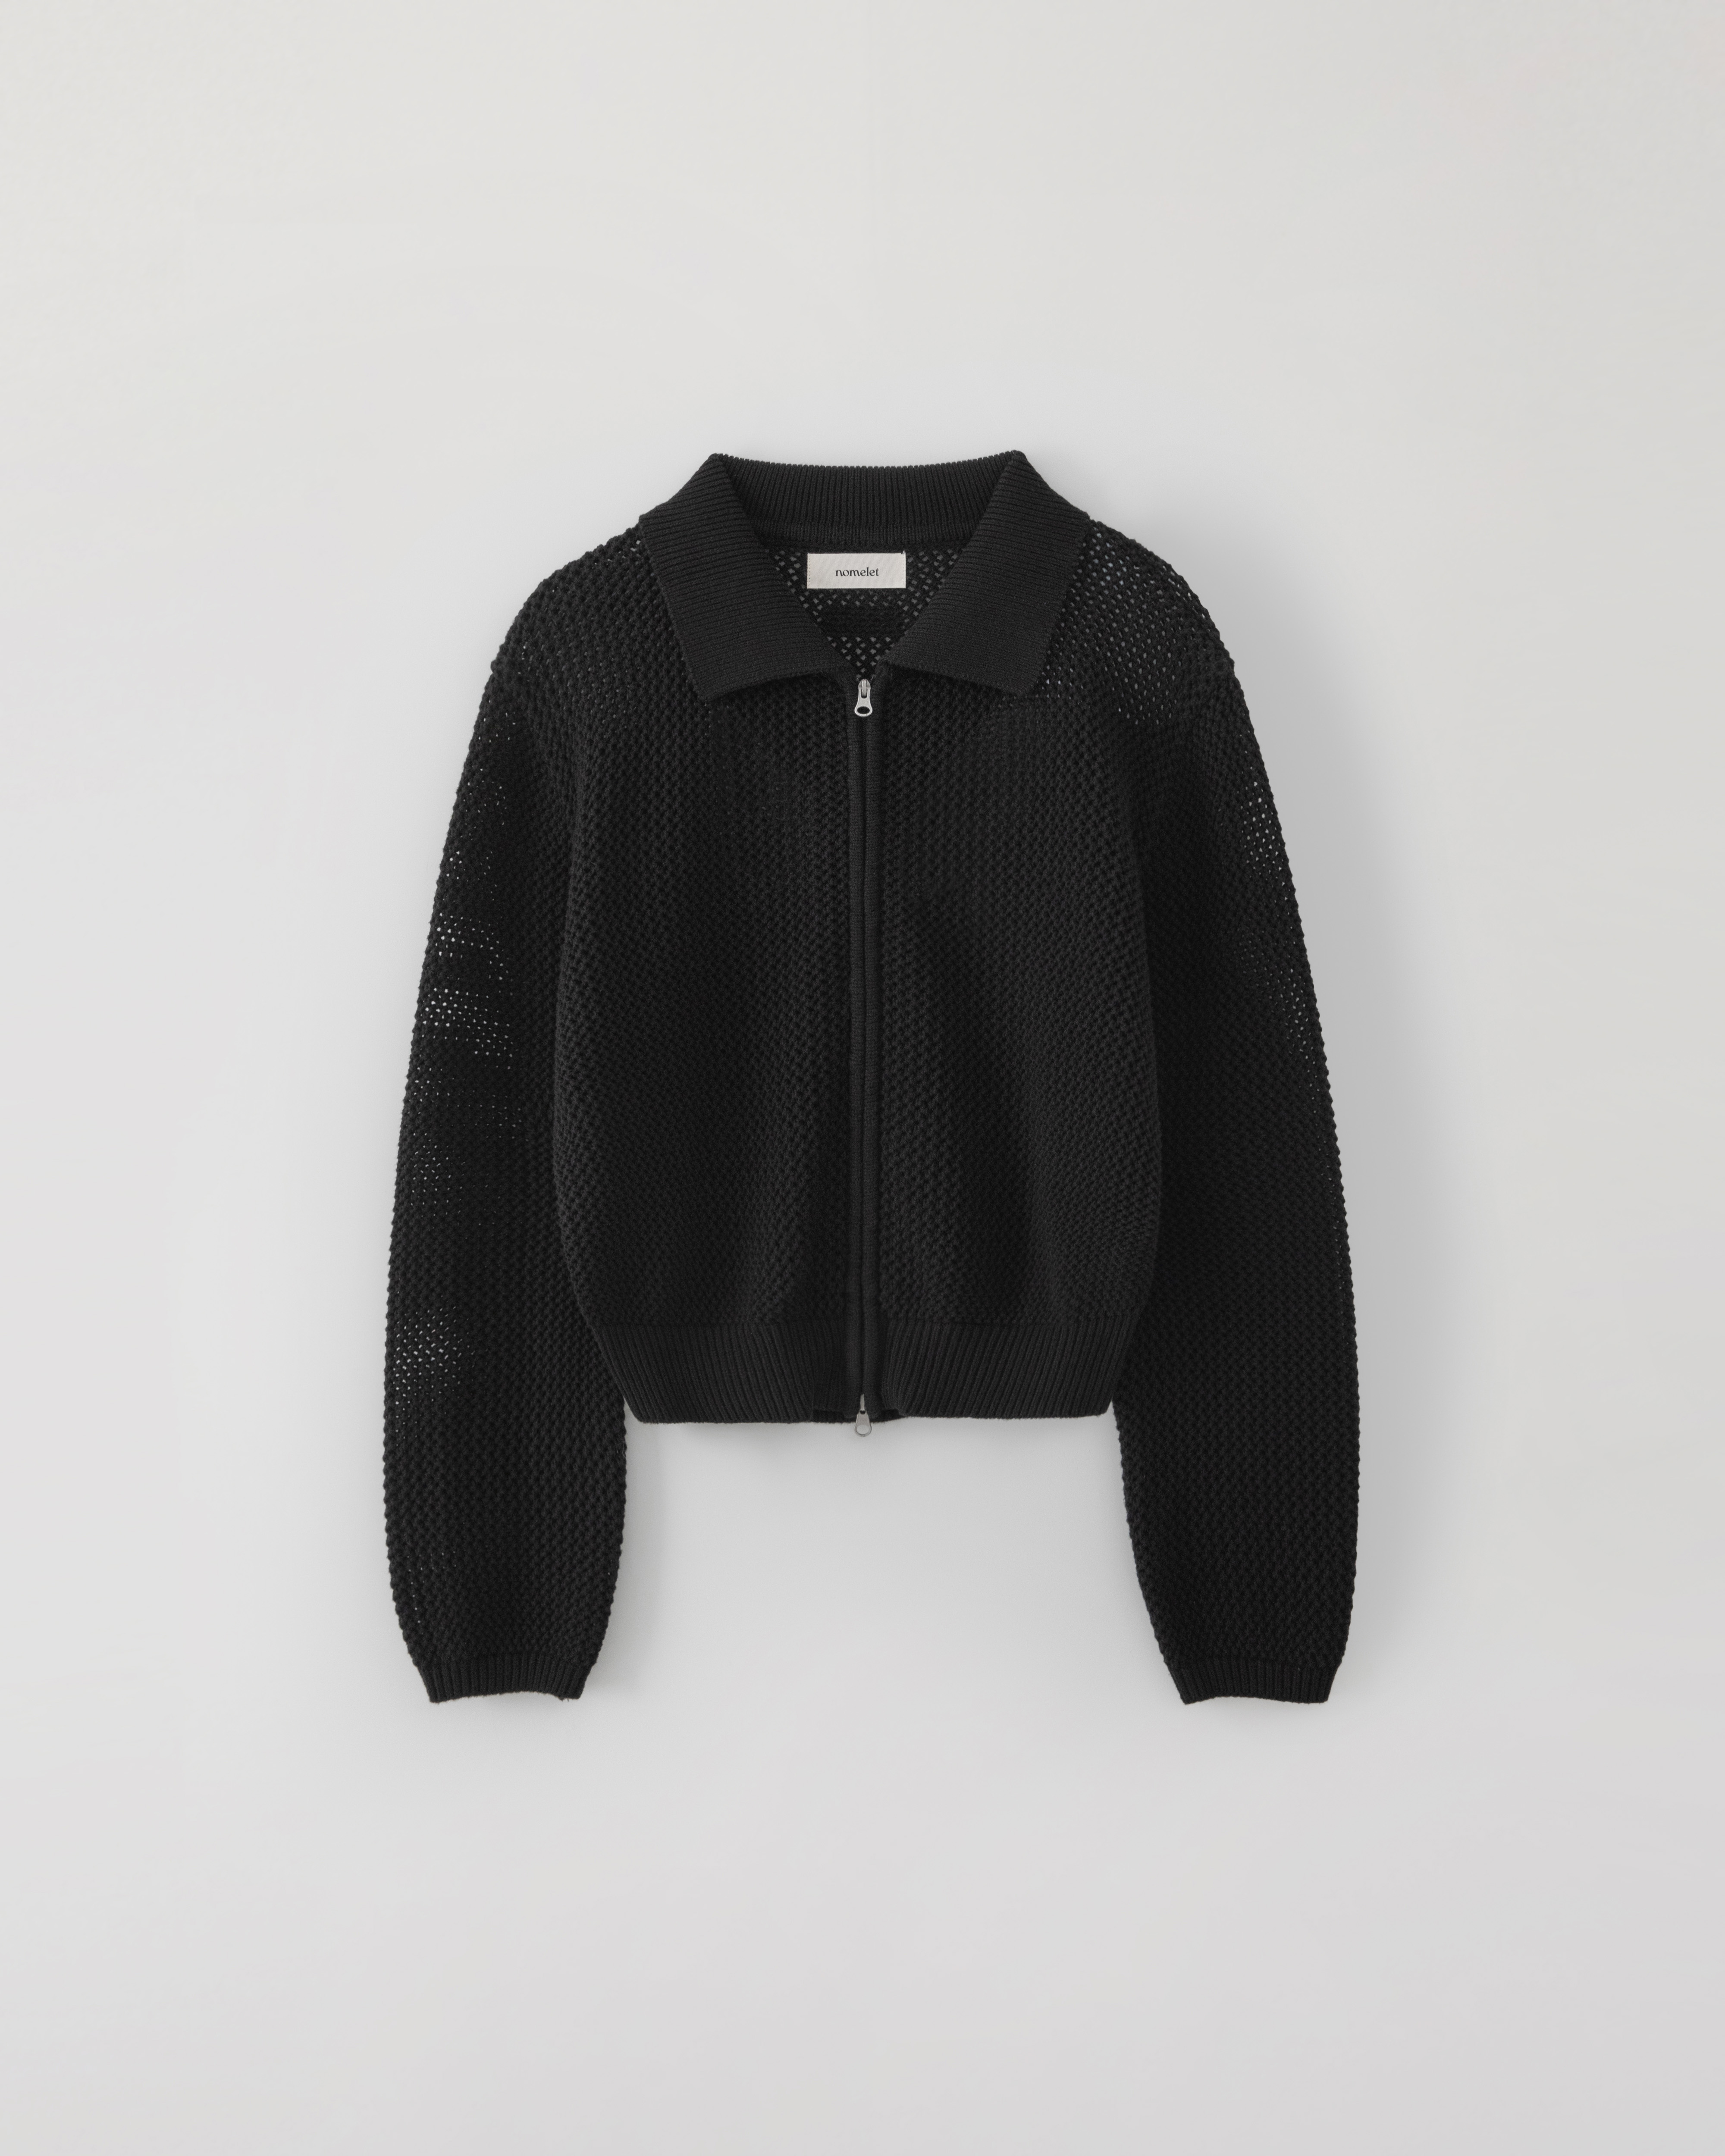 Sandy knit zip-up - black